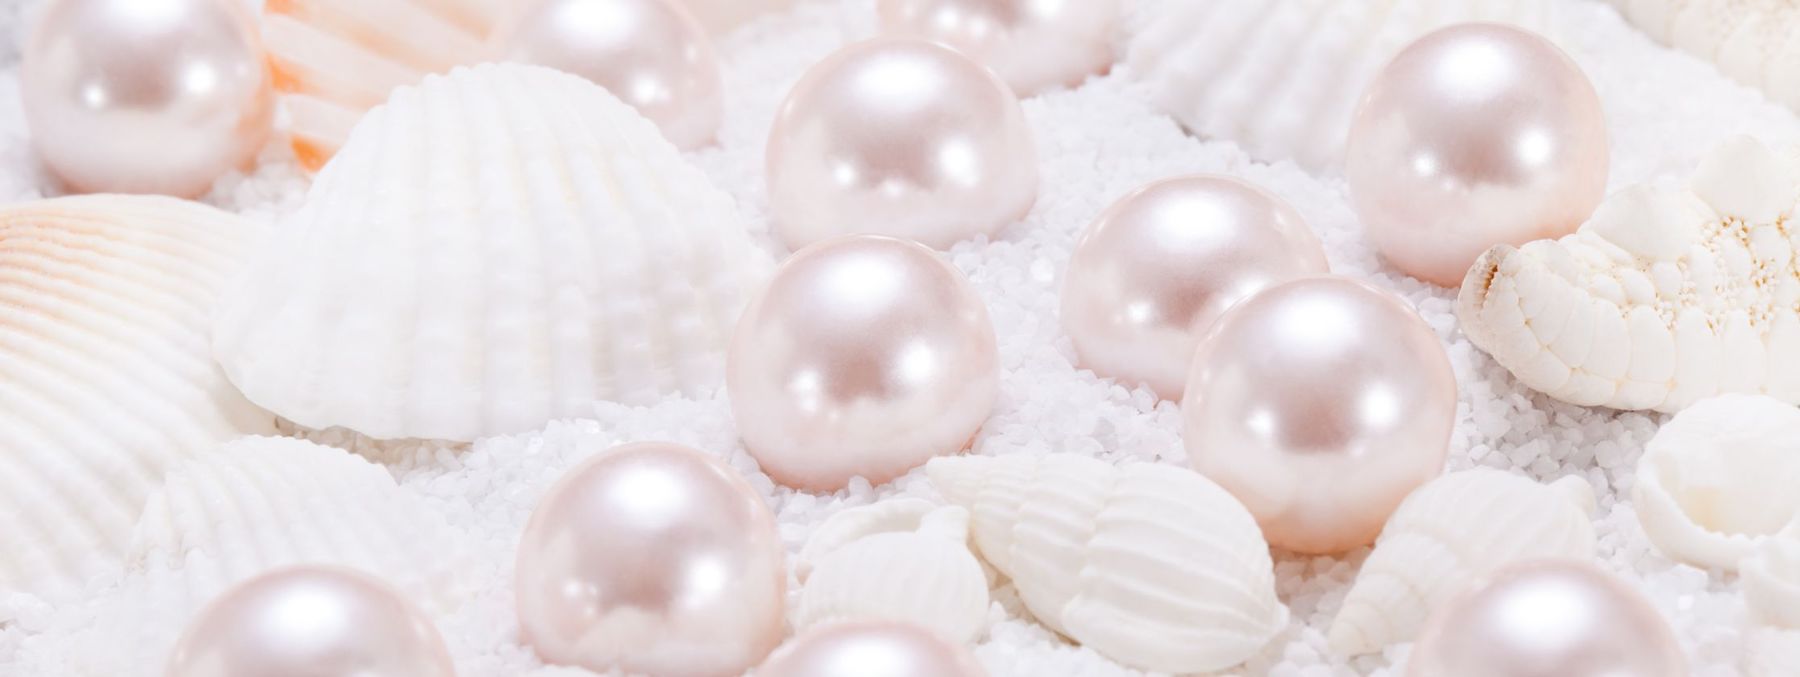 Freshwater Pearls vs. Saltwater Pearls